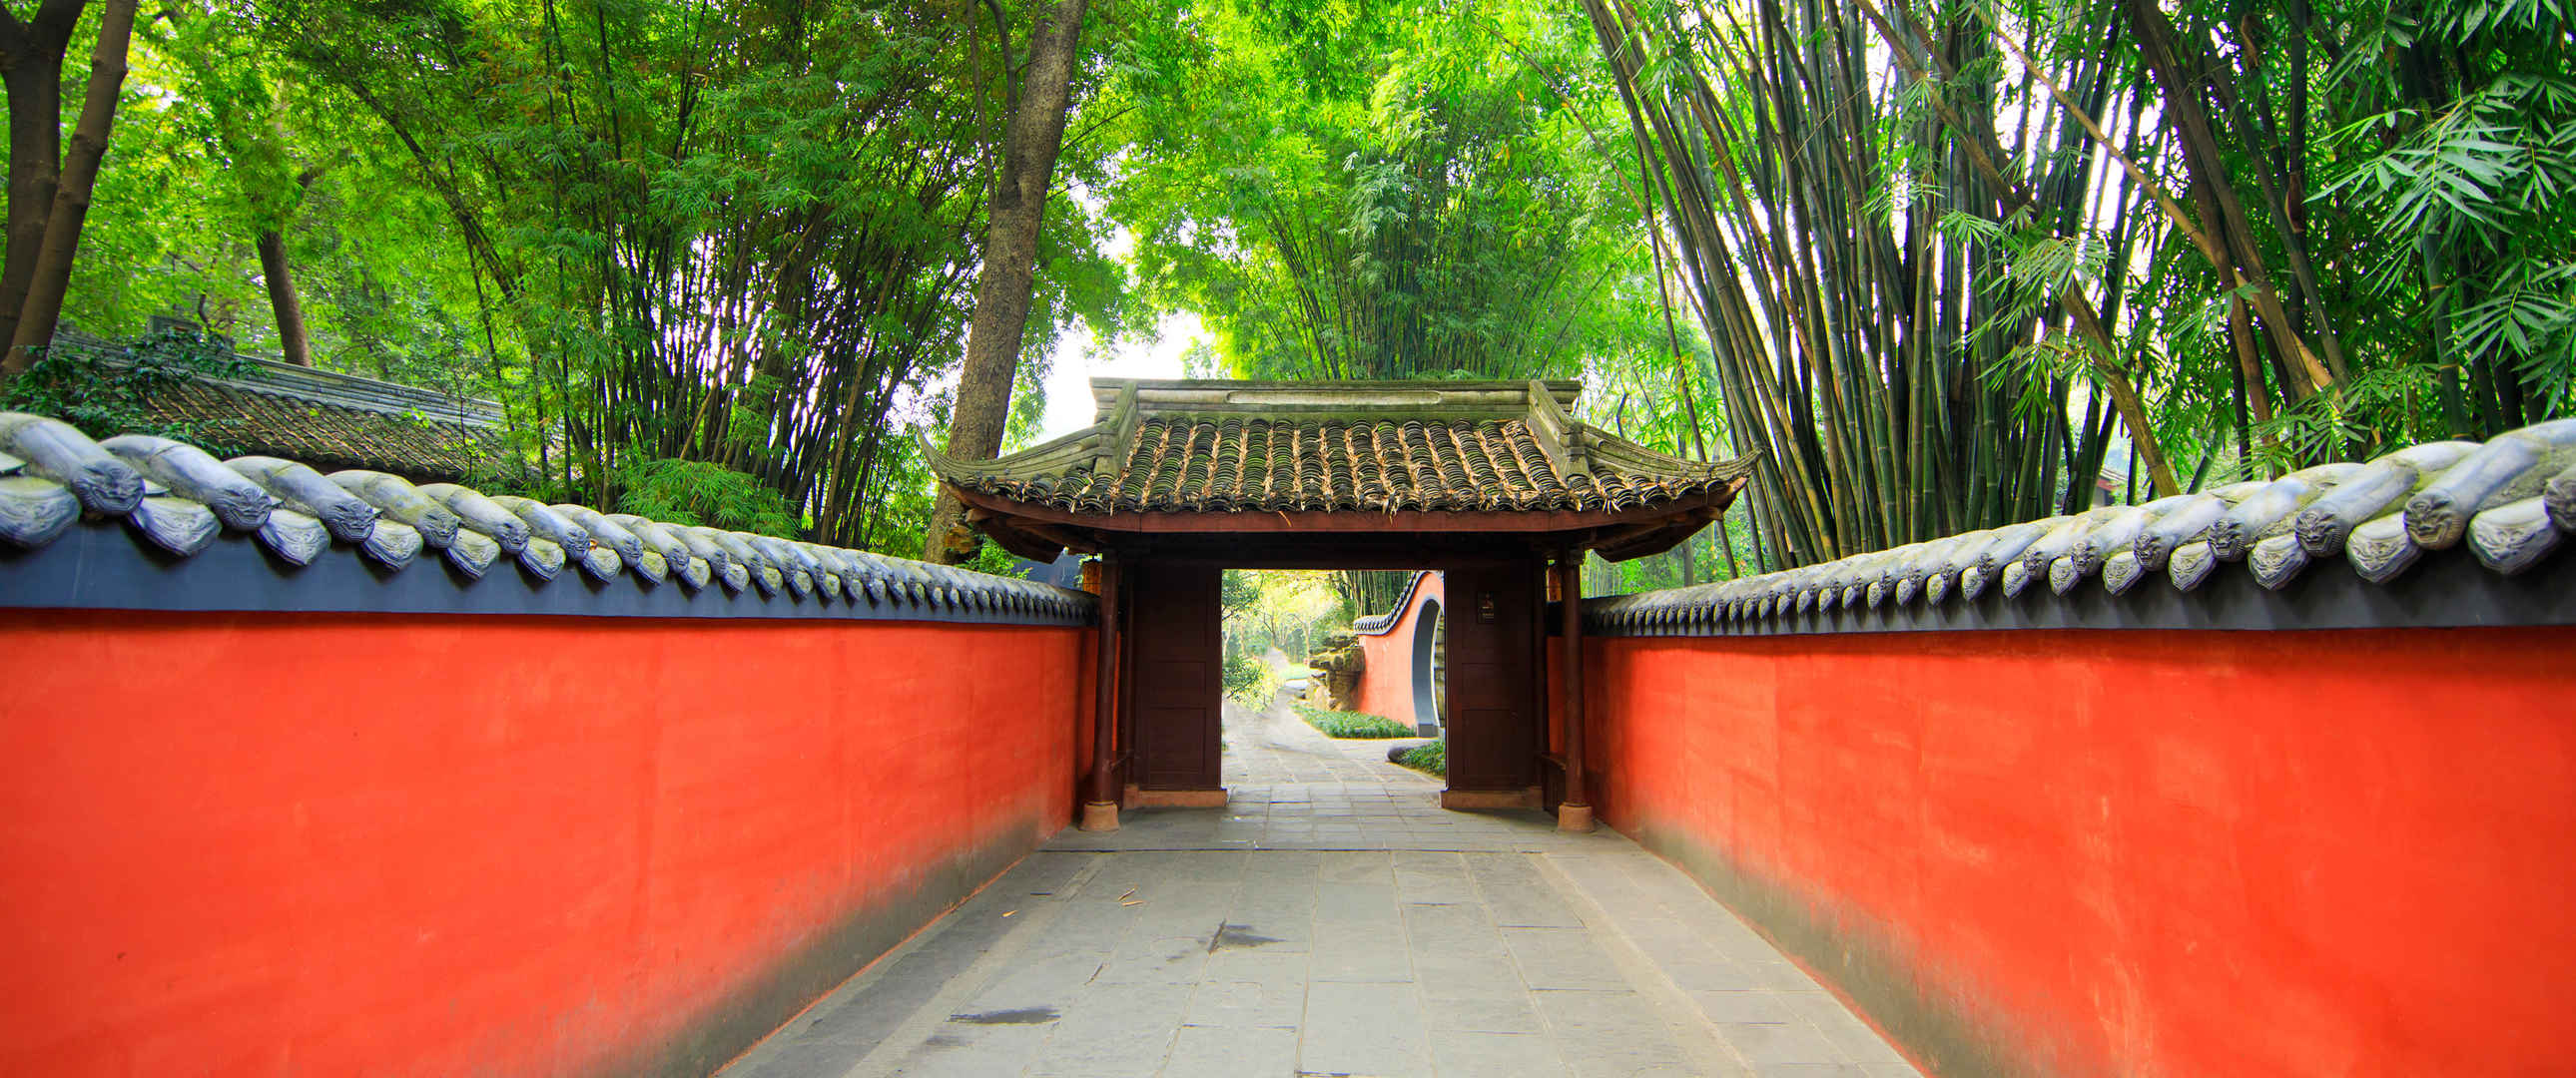 中国风红色围墙 寺院风景3440x1440图片